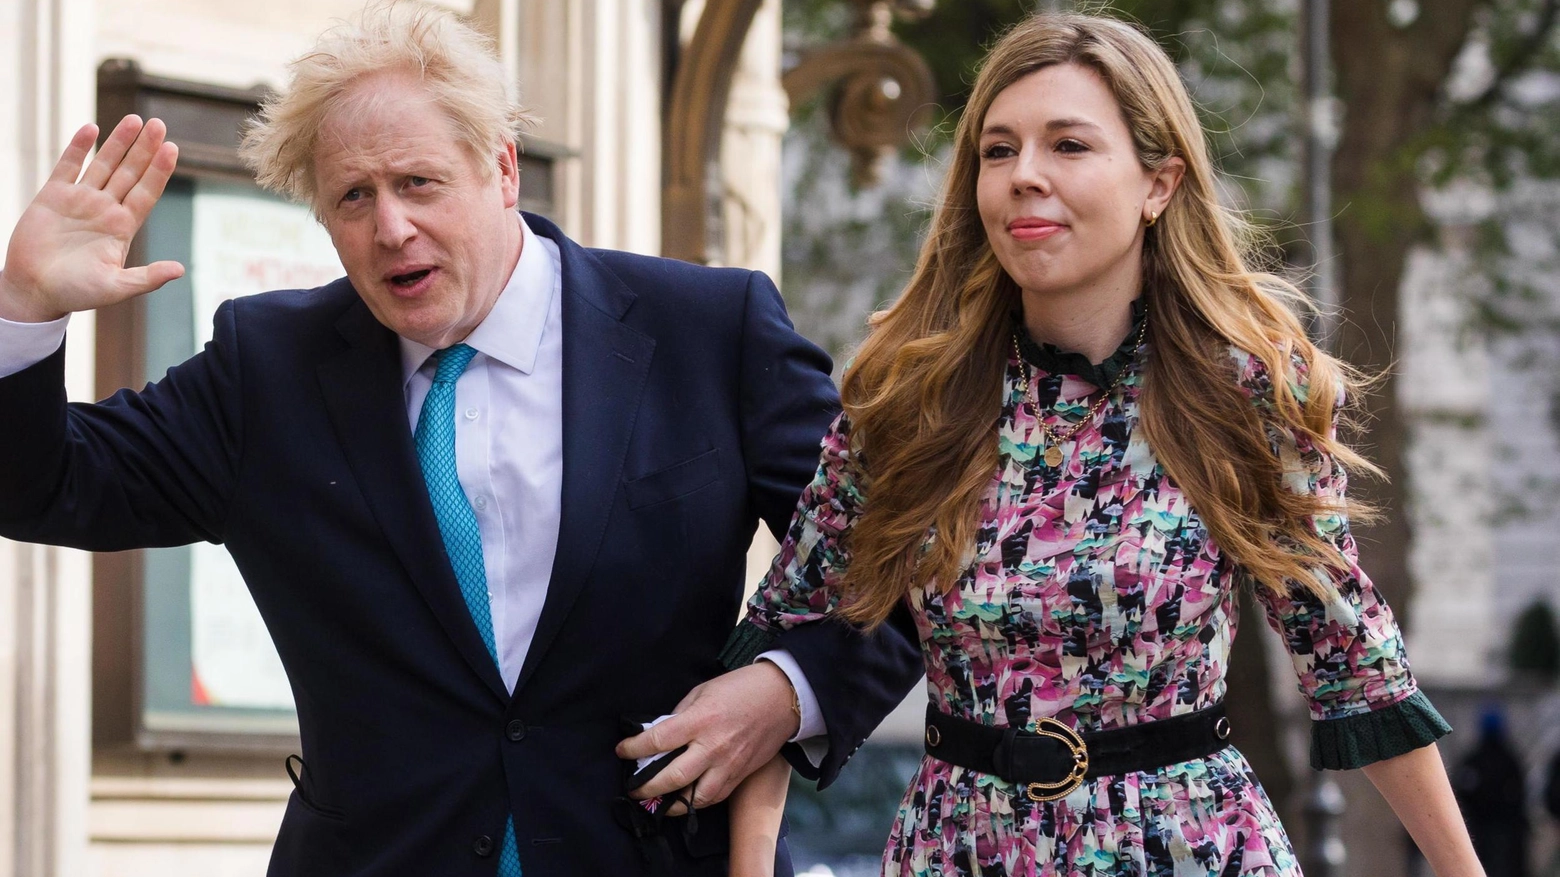 Il premier inglese Boris Johnson, 56 anni, con la fidanzata Carrie Symonds, 33 anni